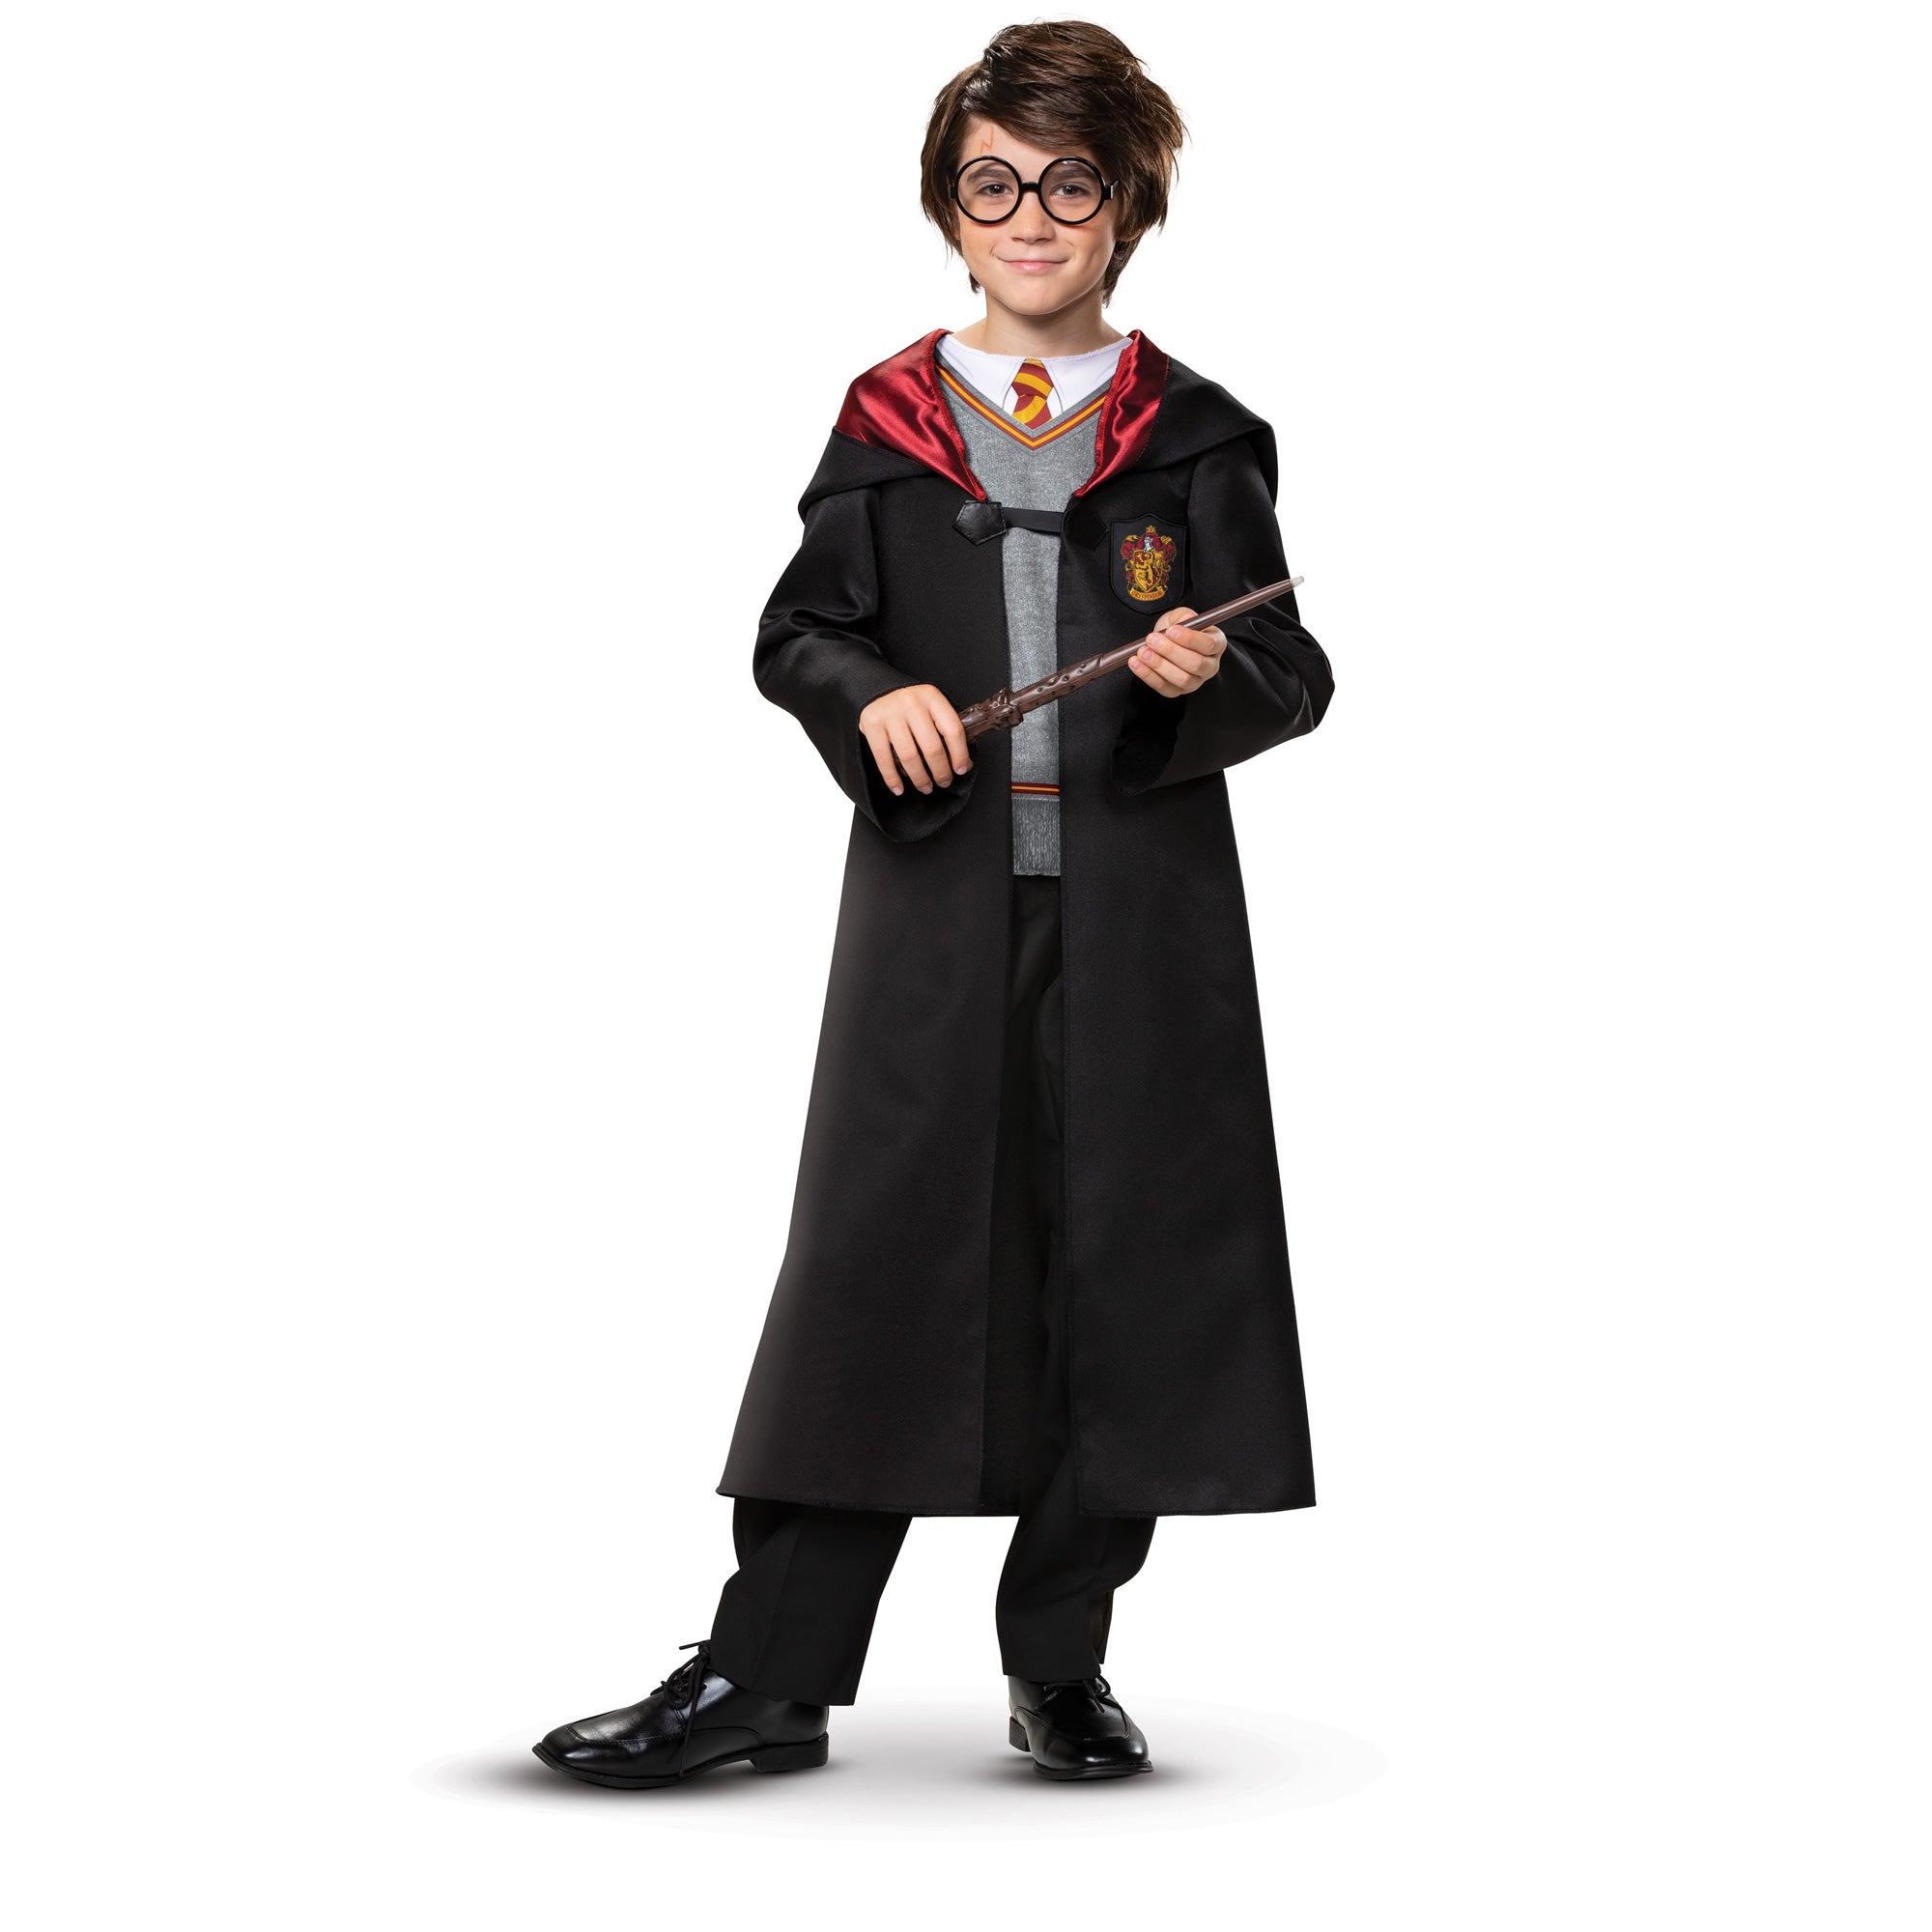 Costume Harry Potter haut de gamme pour enfants, robe à capuche et  combinaison, taille S (4-6)